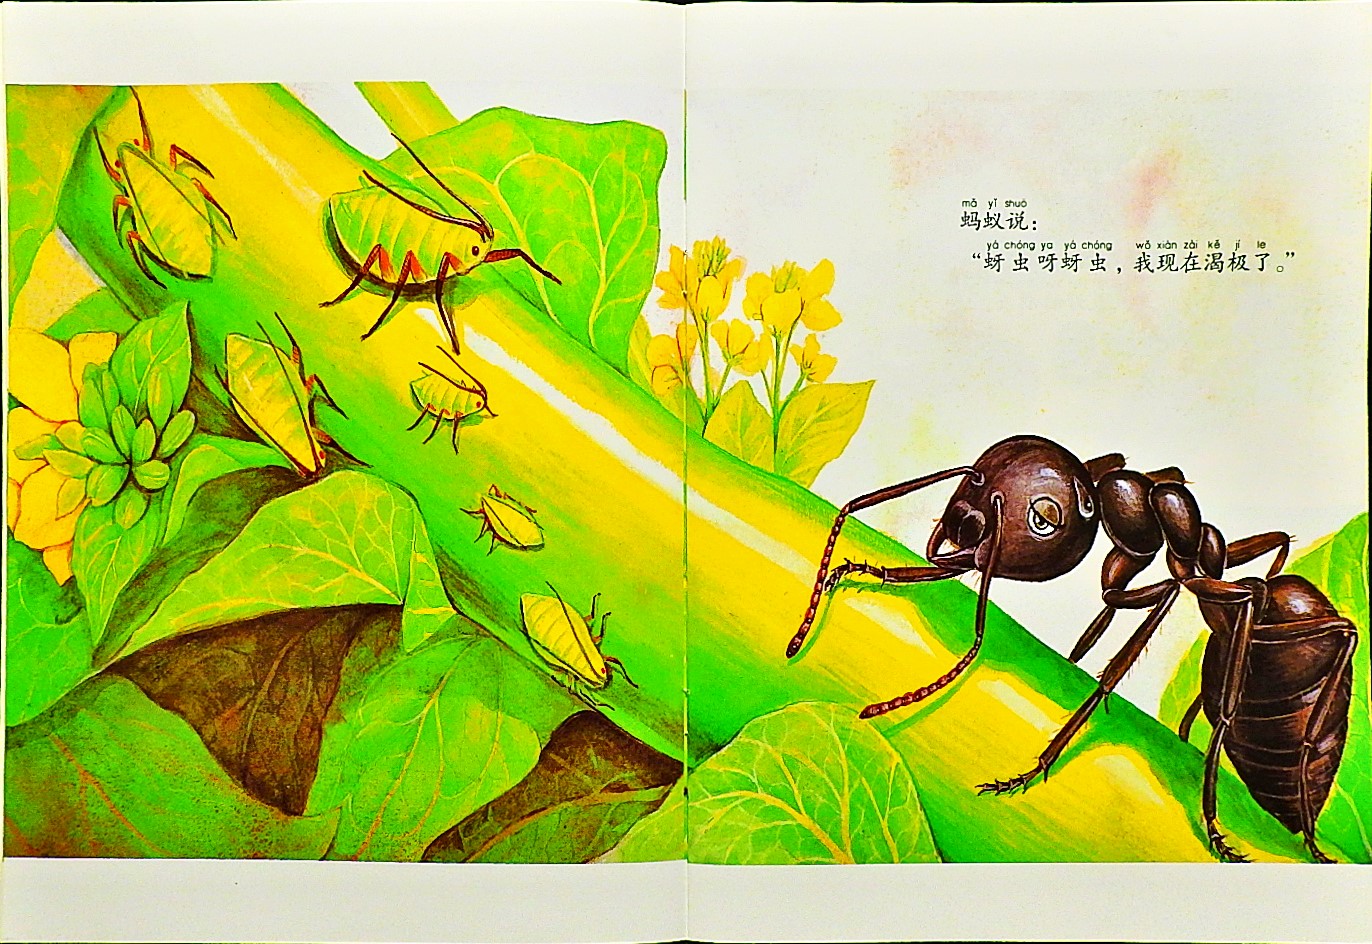 勇敢的小蚂蚁 (05),绘本,绘本故事,绘本阅读,故事书,童书,图画书,课外阅读